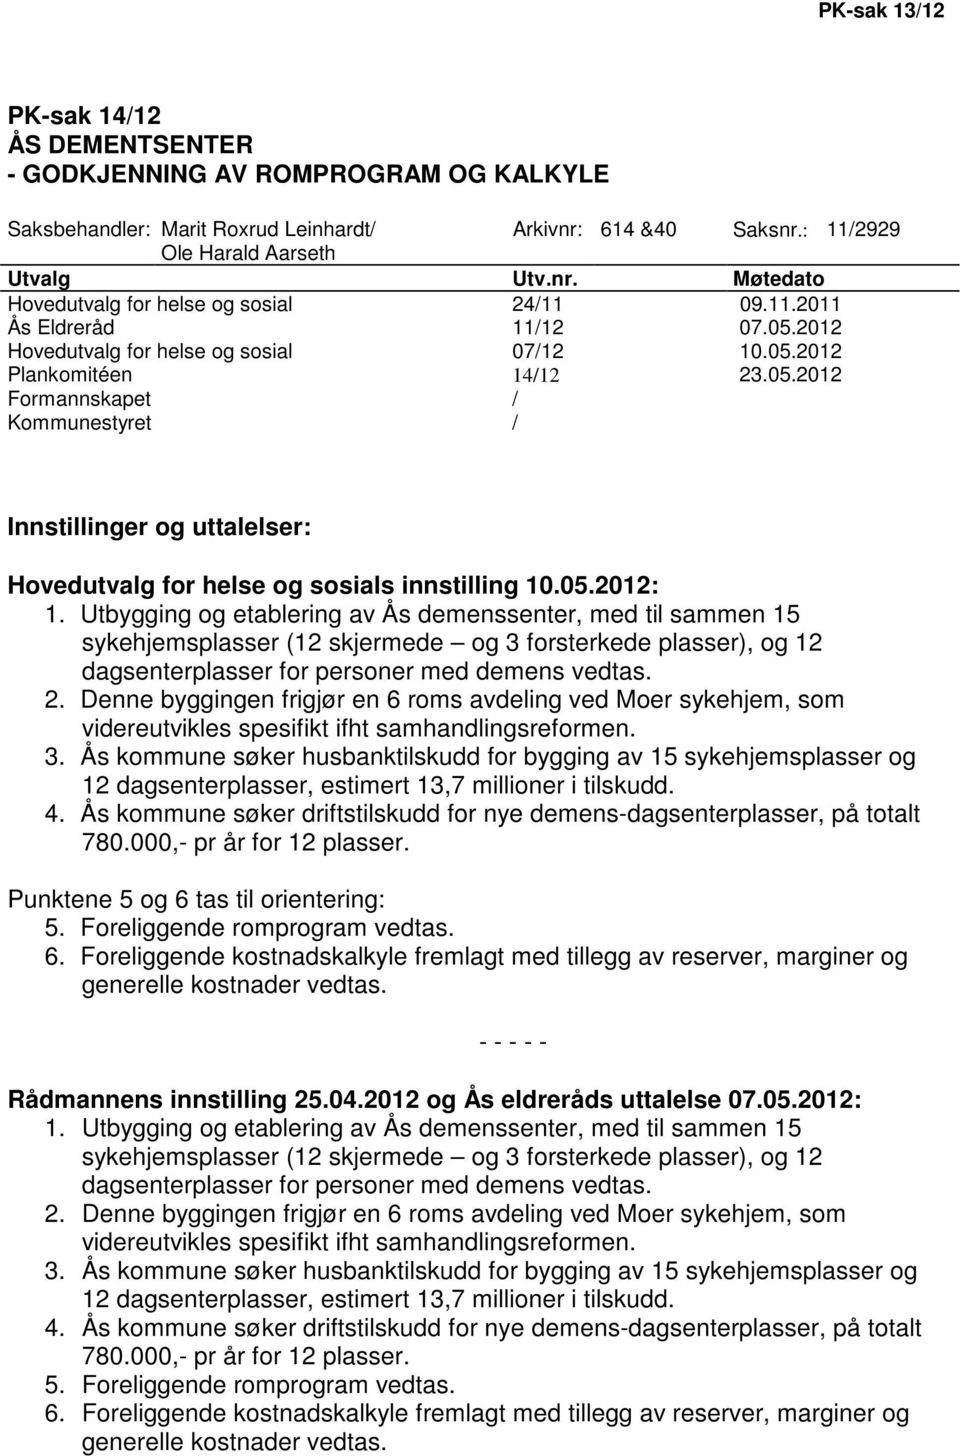 05.2012: 1. Utbygging og etablering av Ås demenssenter, med til sammen 15 sykehjemsplasser (12 skjermede og 3 forsterkede plasser), og 12 dagsenterplasser for personer med demens vedtas. 2.